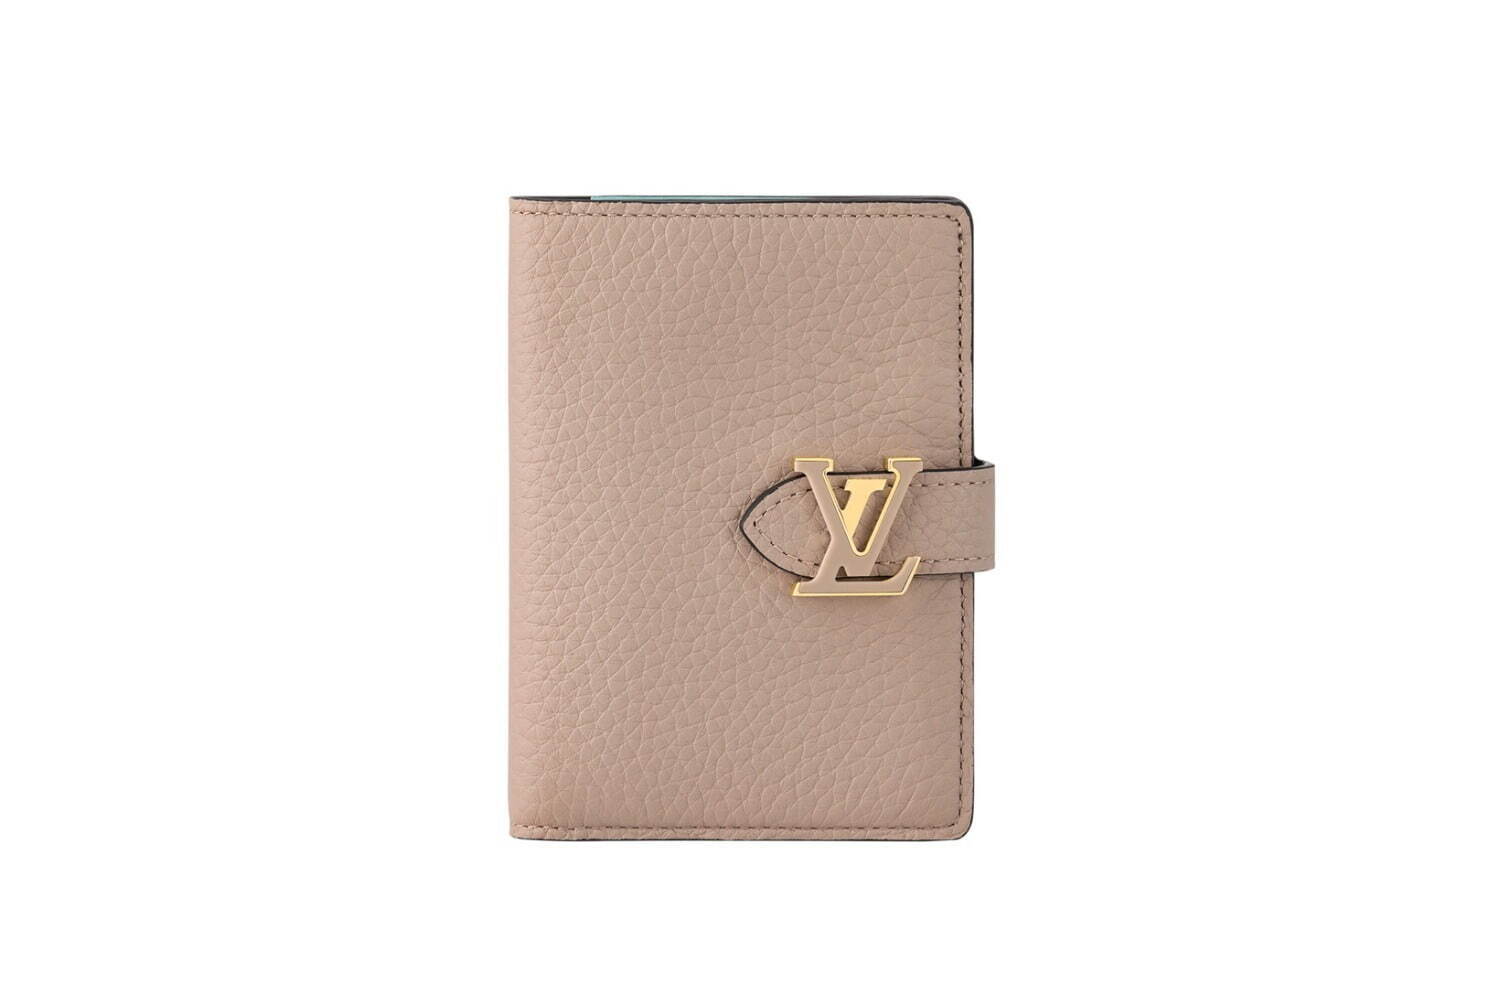 ルイ・ヴィトンの新作財布、アイコンバッグ「カプシーヌ」風“LV